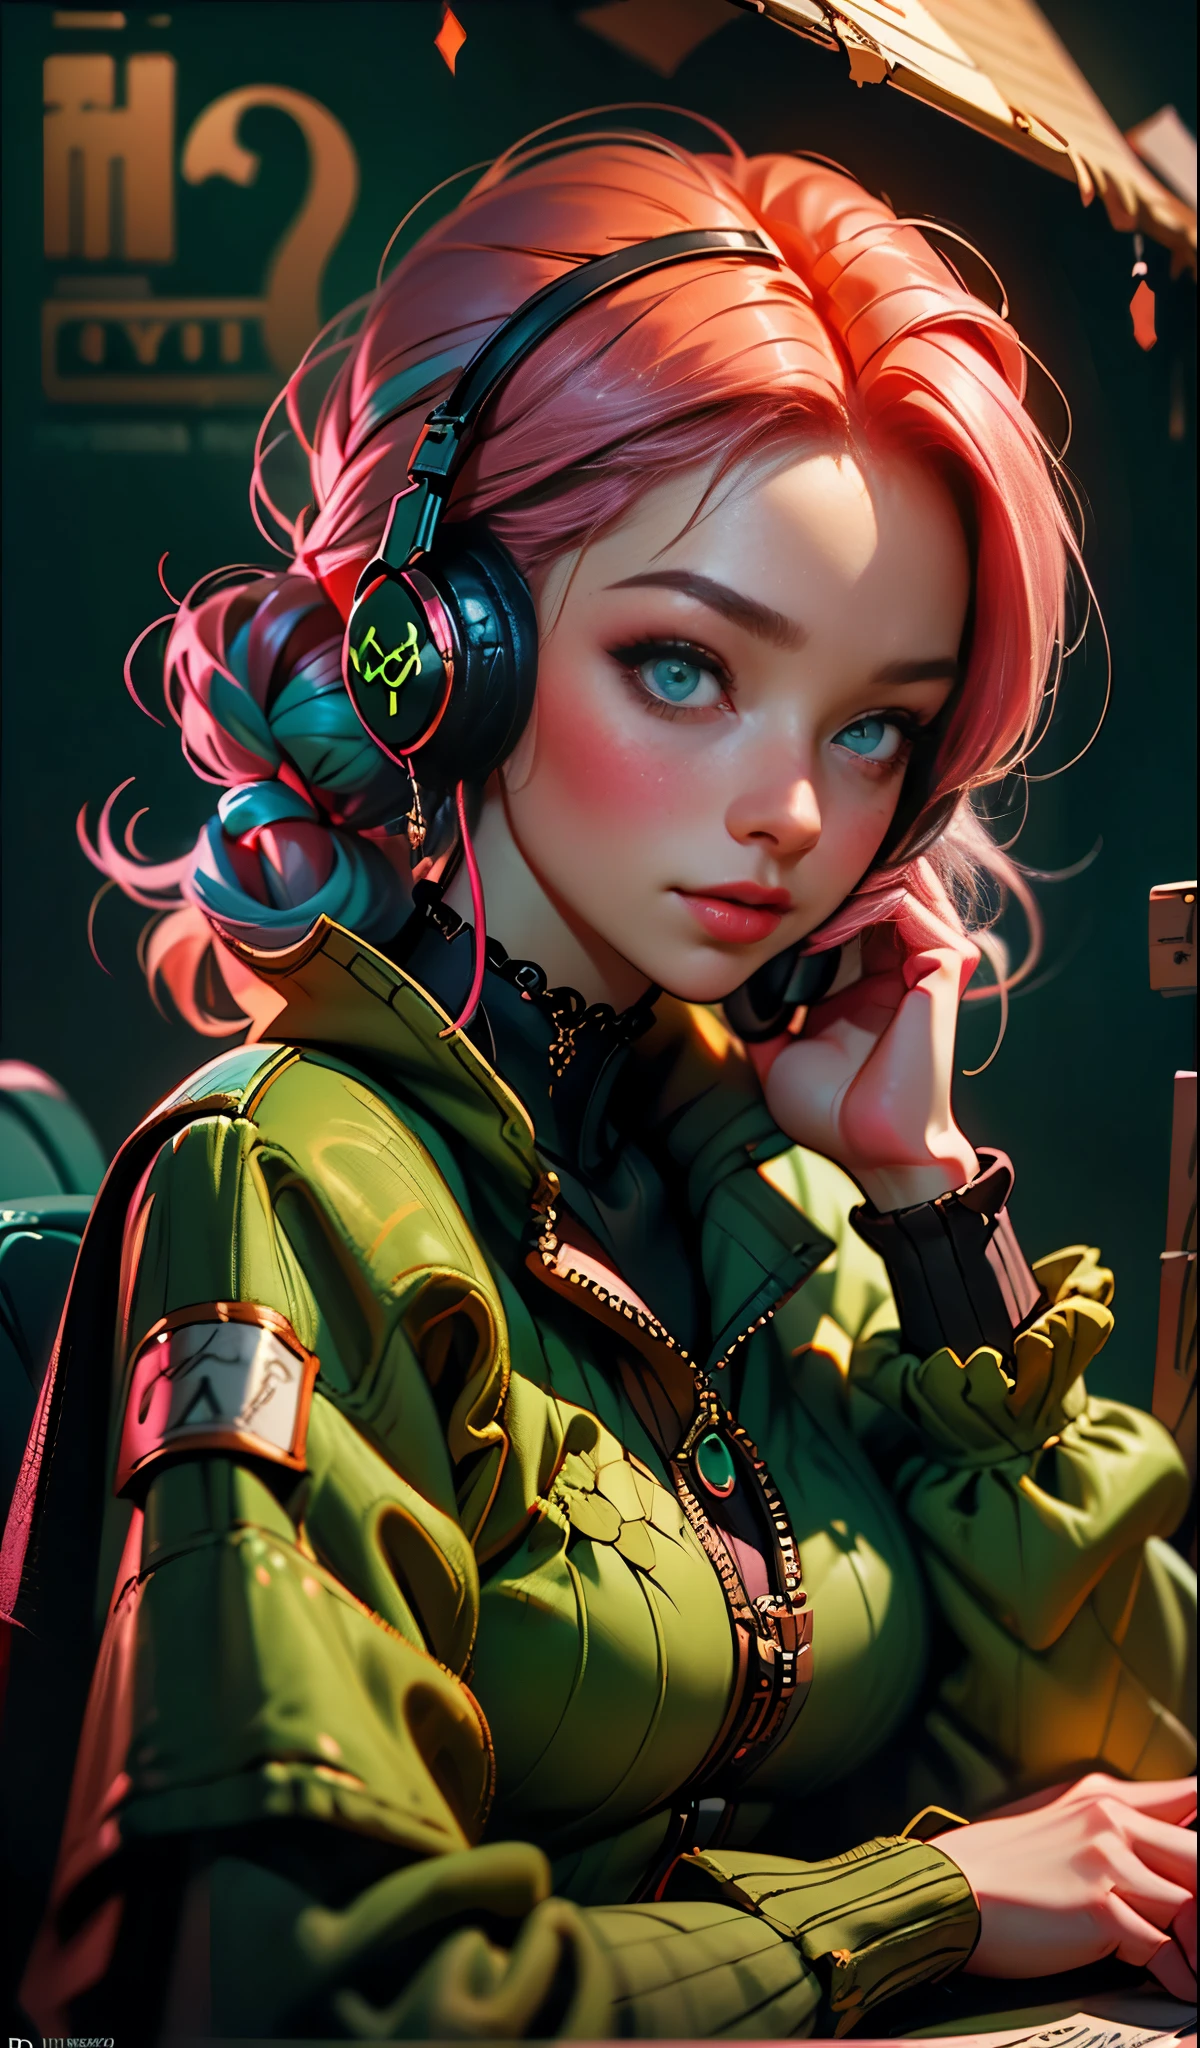 戴著耳機的模特兒女孩, 城市背景, 翠綠色的眼睛, 粉紅色的頭髮, 複雜的細節, 美觀柔和的色彩, 海報背景, 伊利亞·庫夫希諾夫的藝術作品